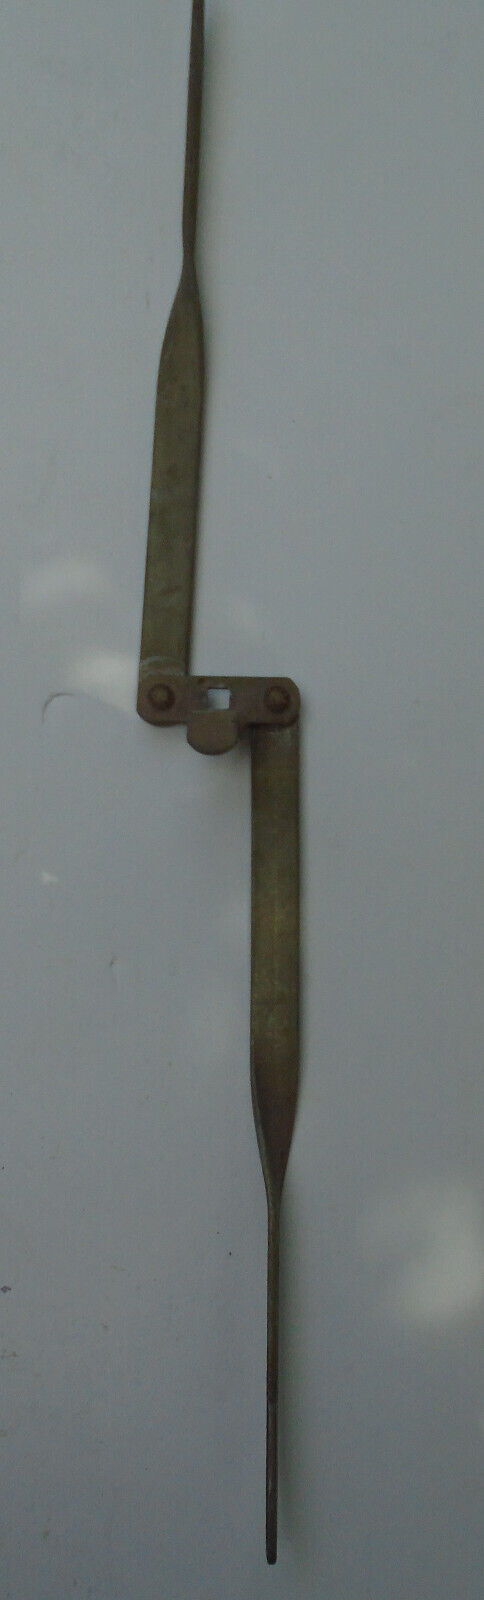 Cavalier CSS-8-64 coin door locking mechanism good used